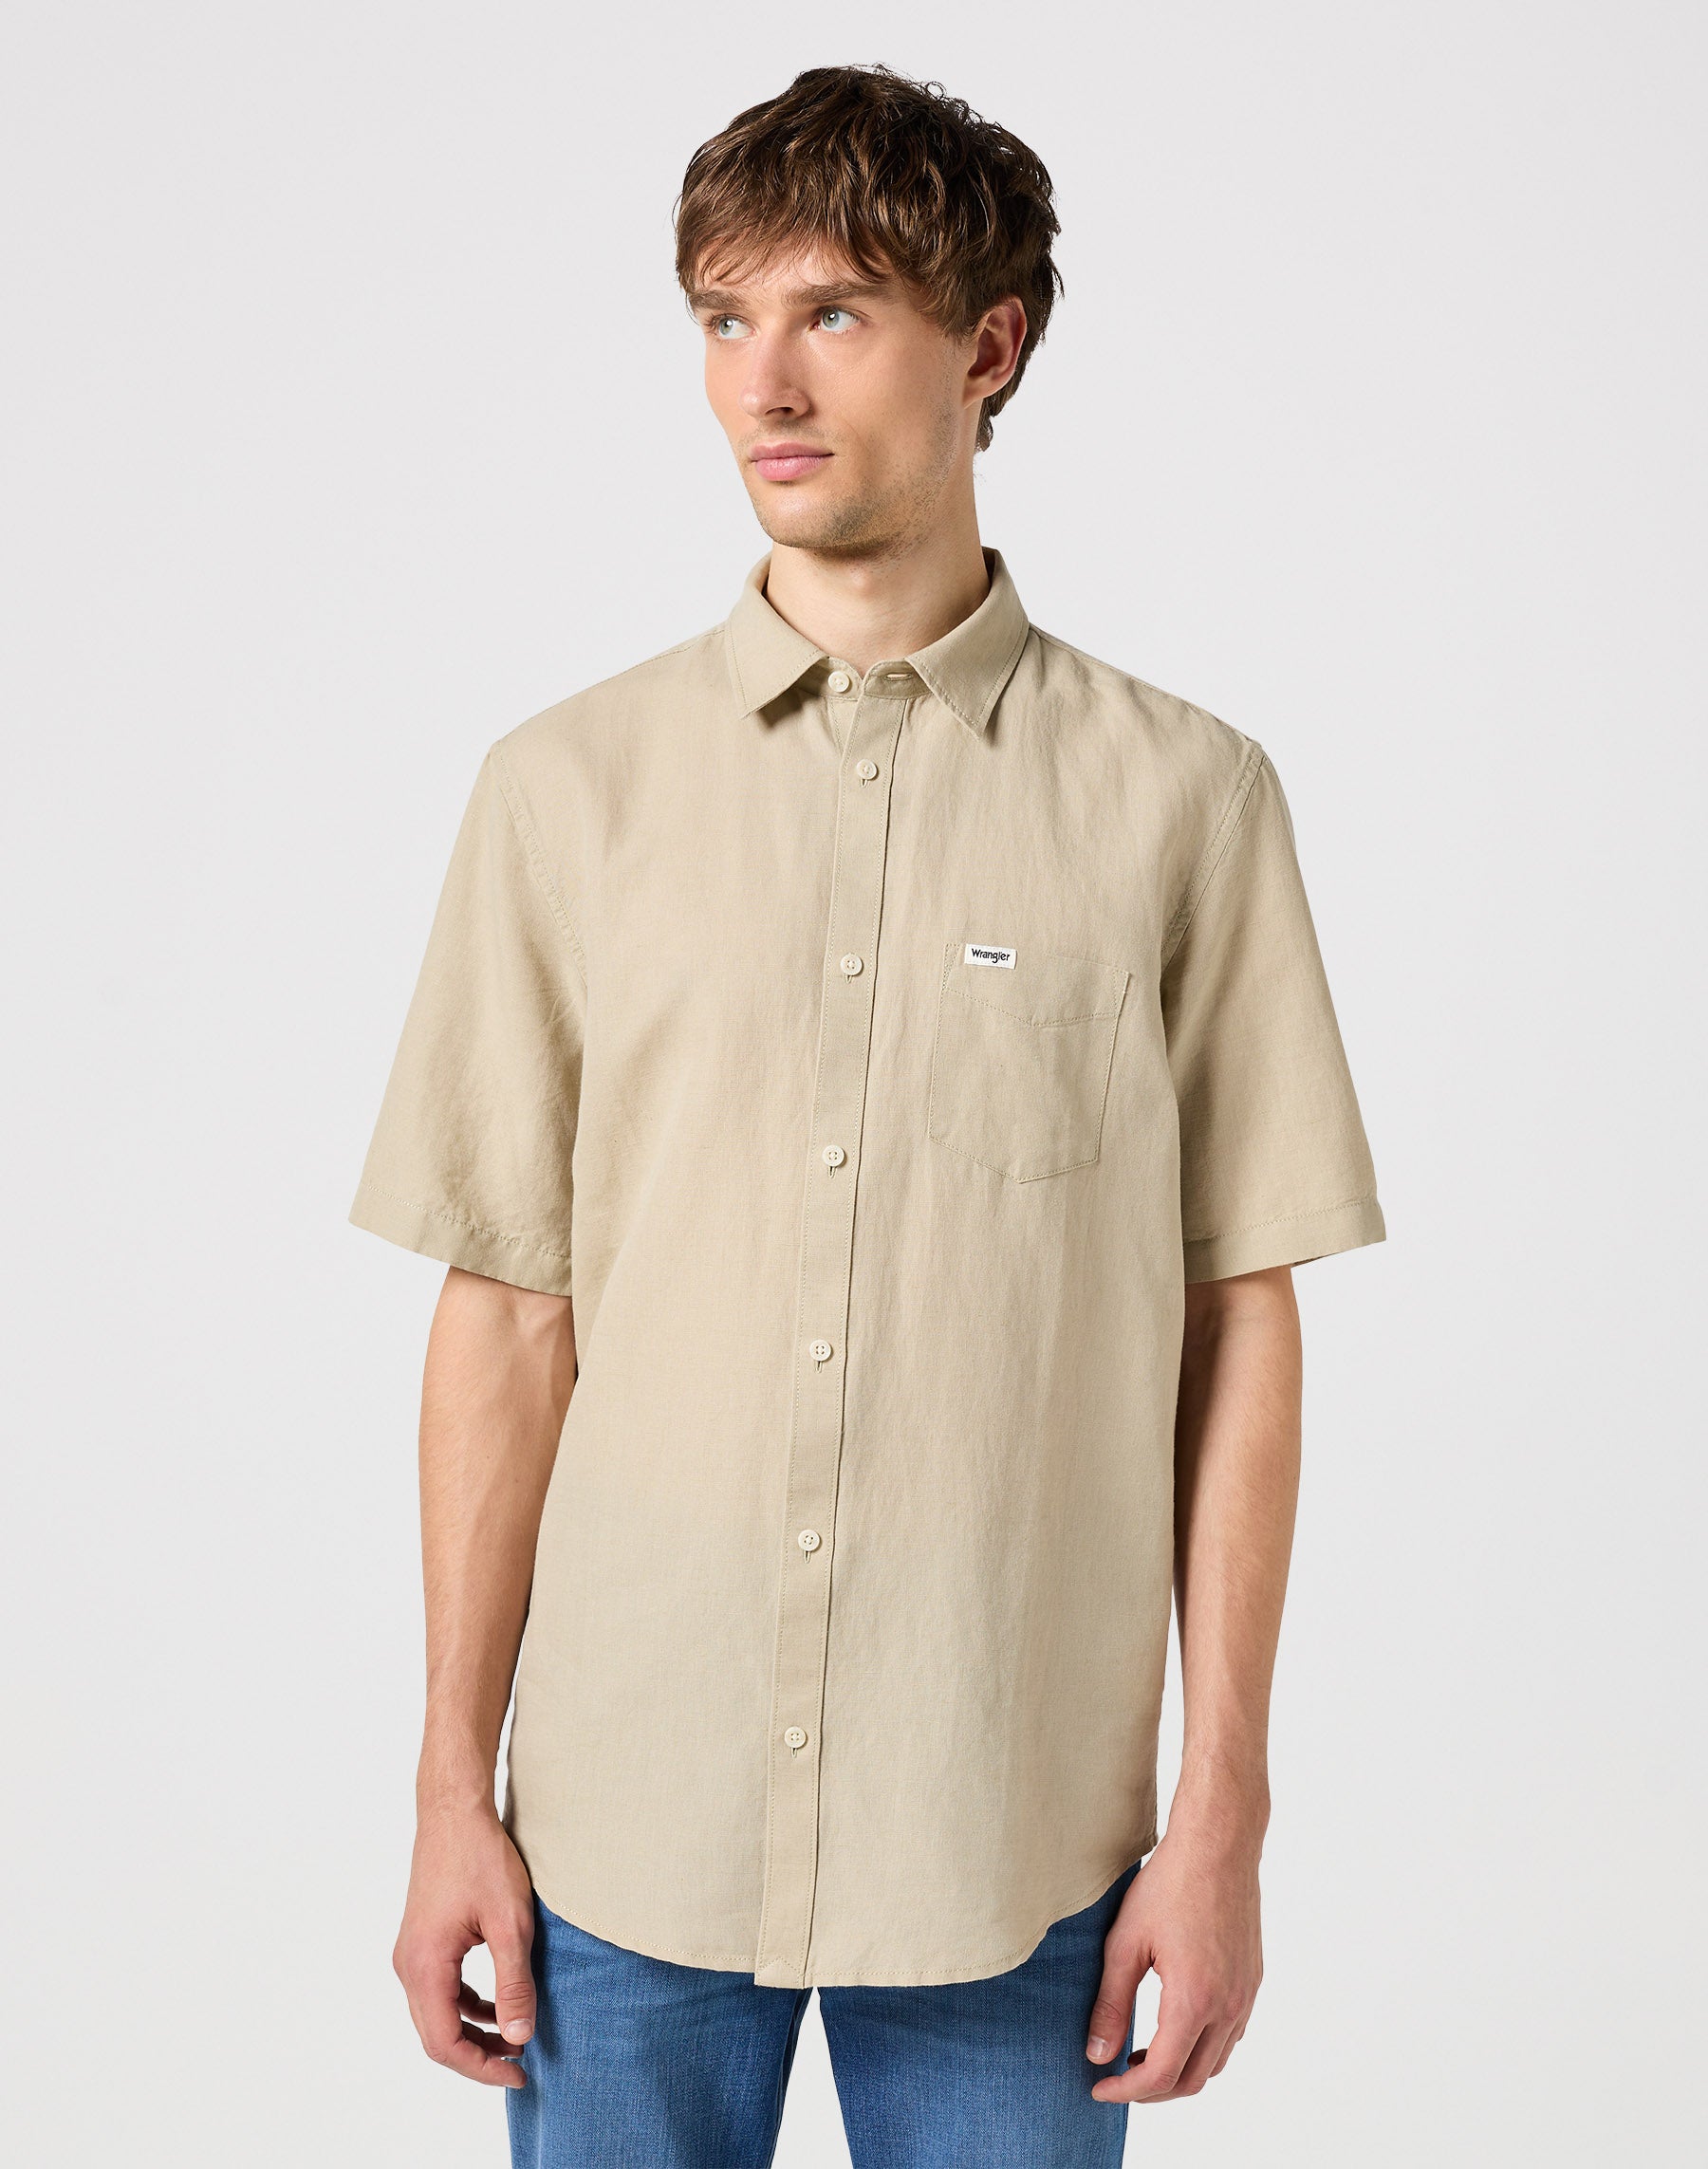 One Pocket Shirt in Plaza Taupe Hemden Wrangler   